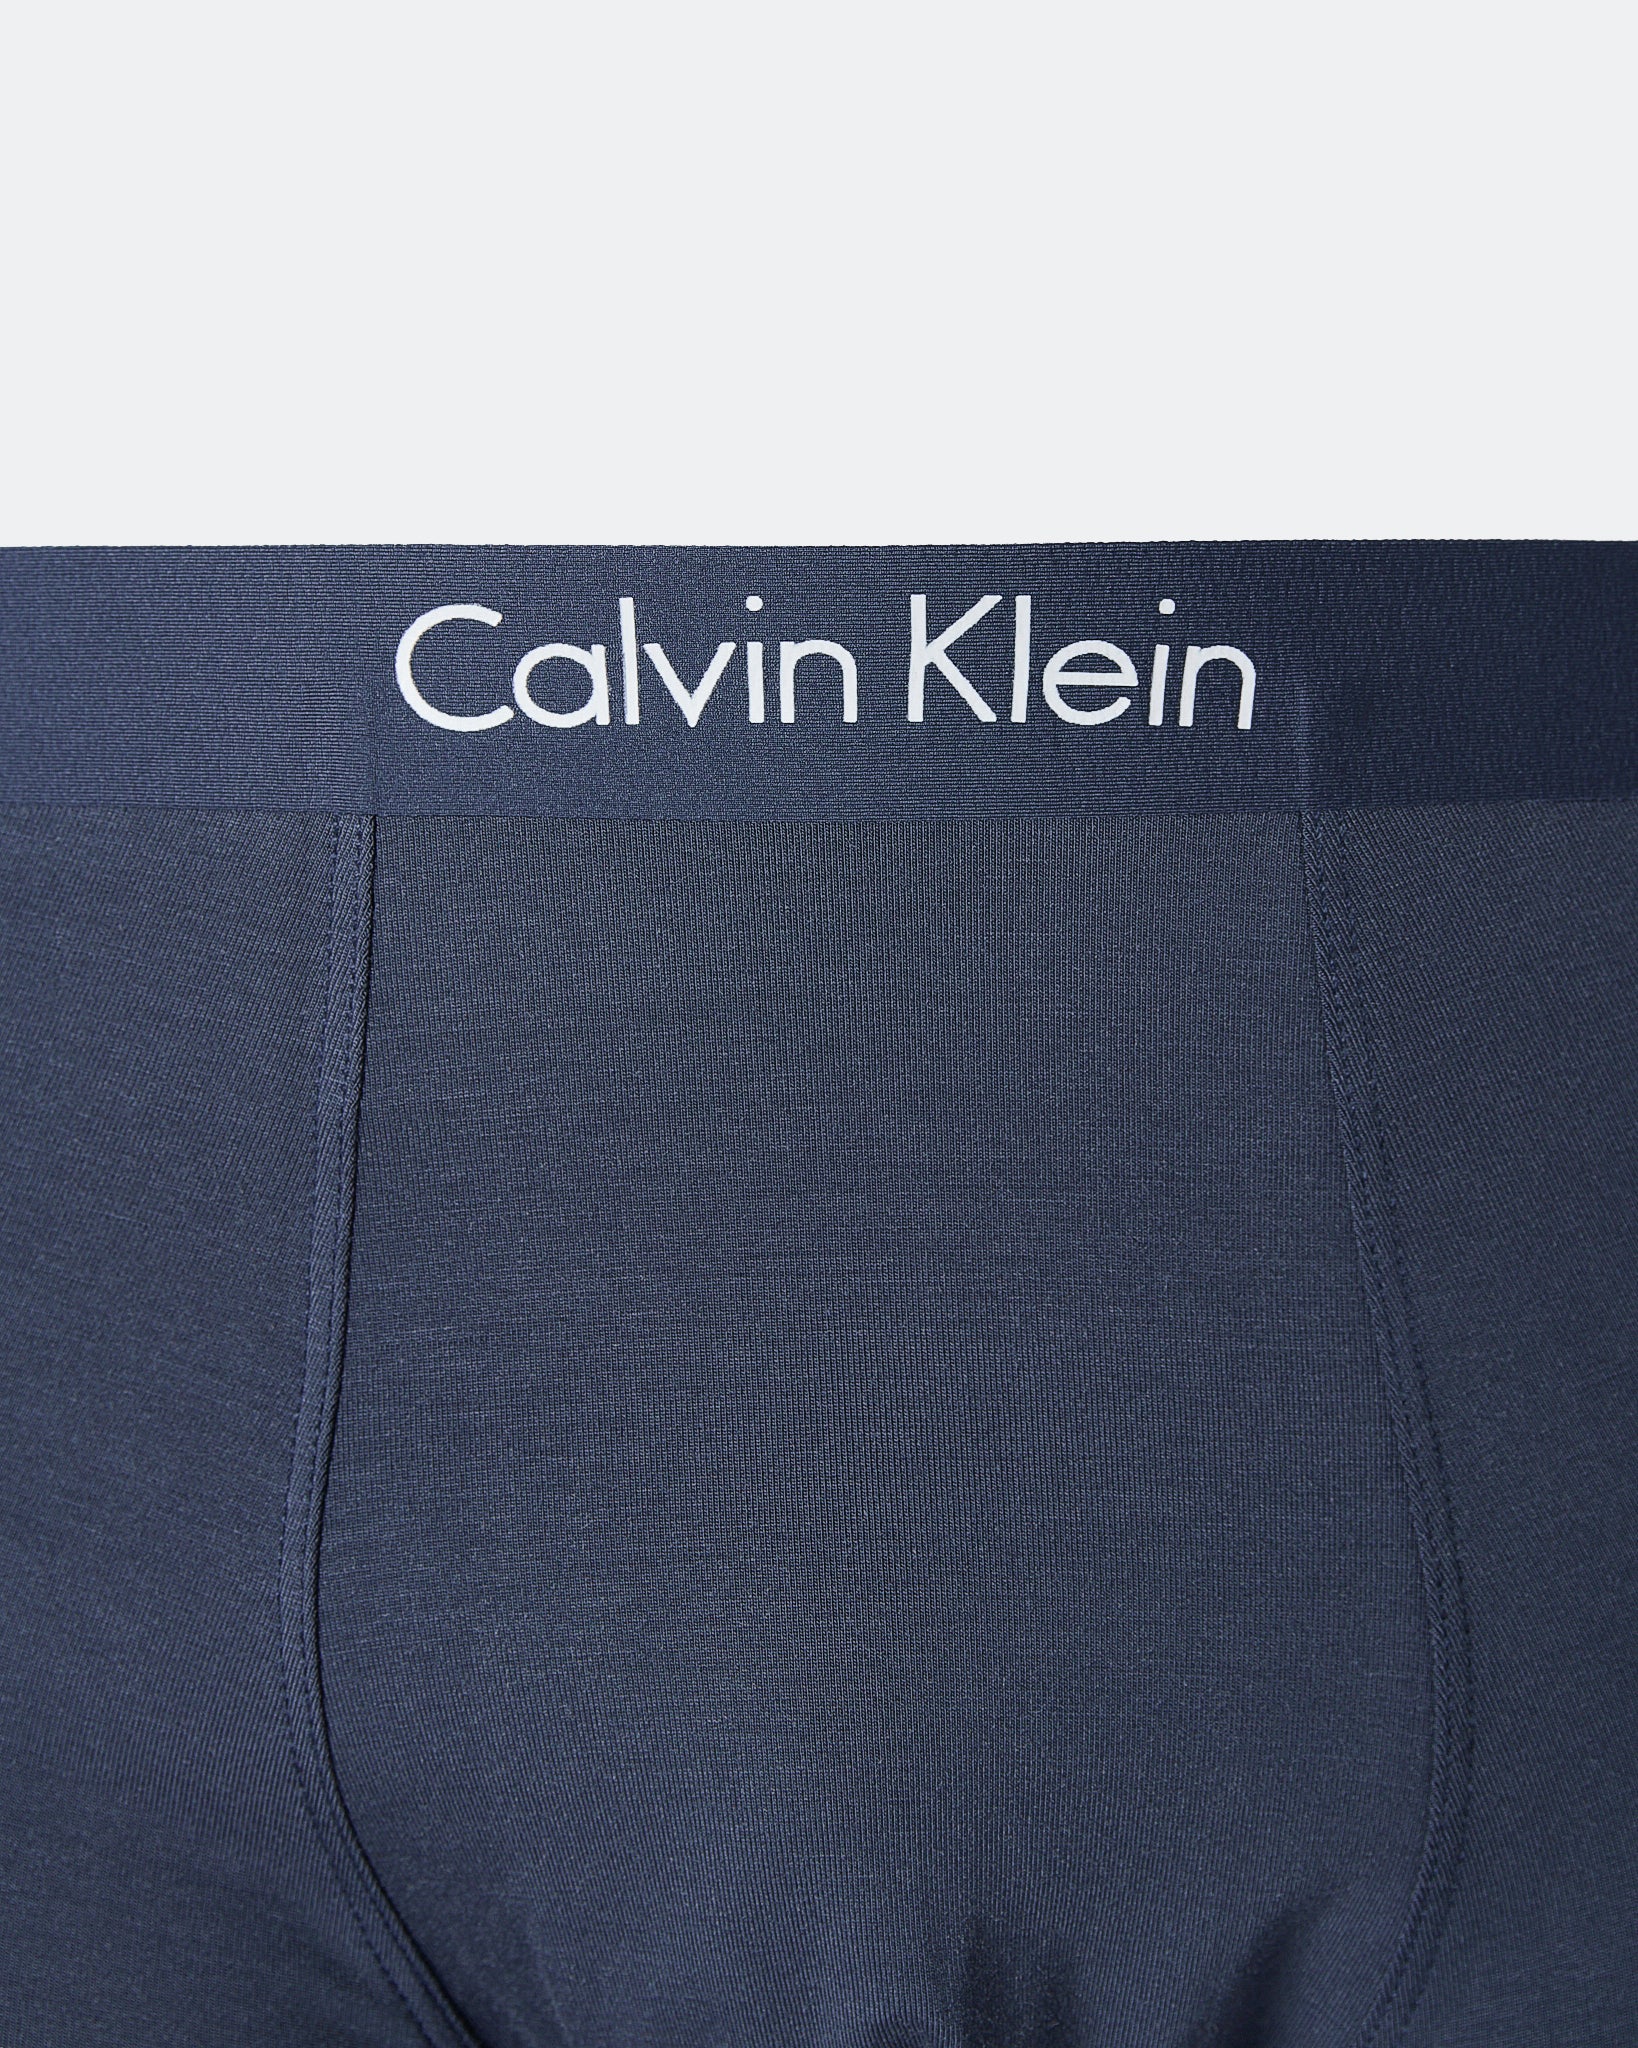 CK Striped Over Printed Men Blue Underwear 6.90